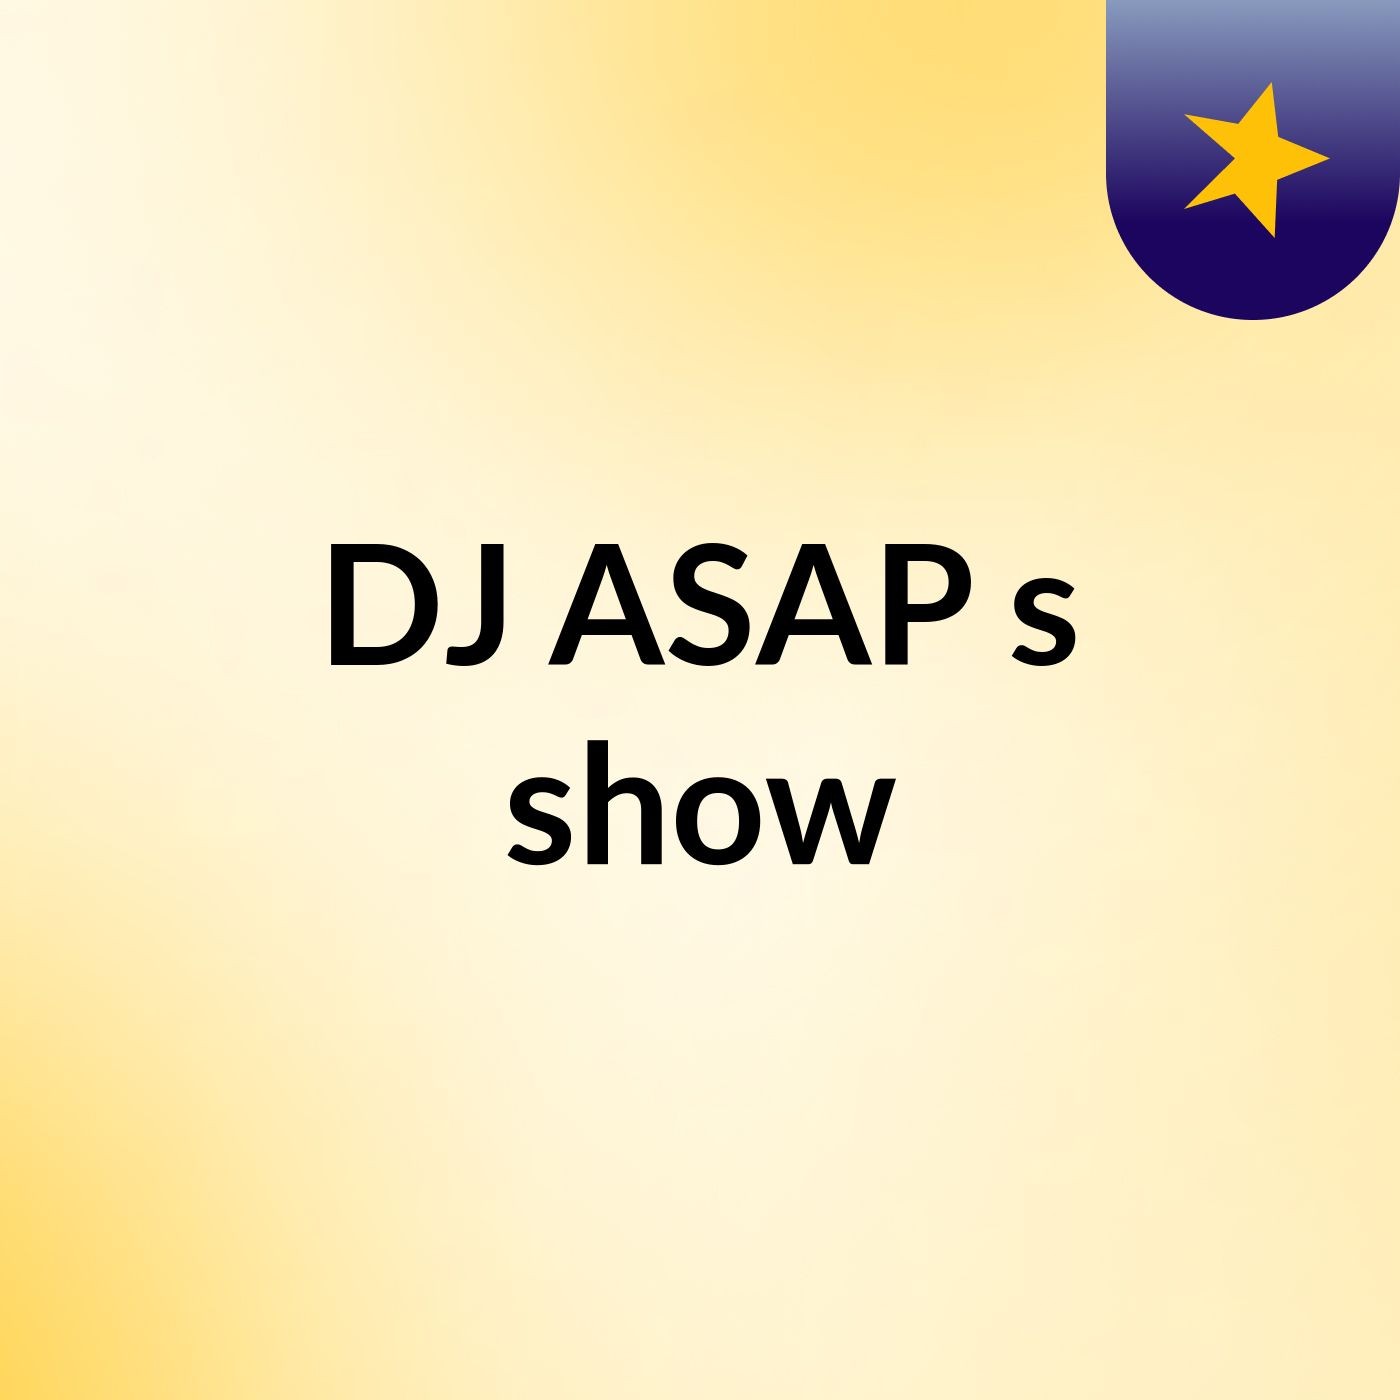 DJ ASAP's show